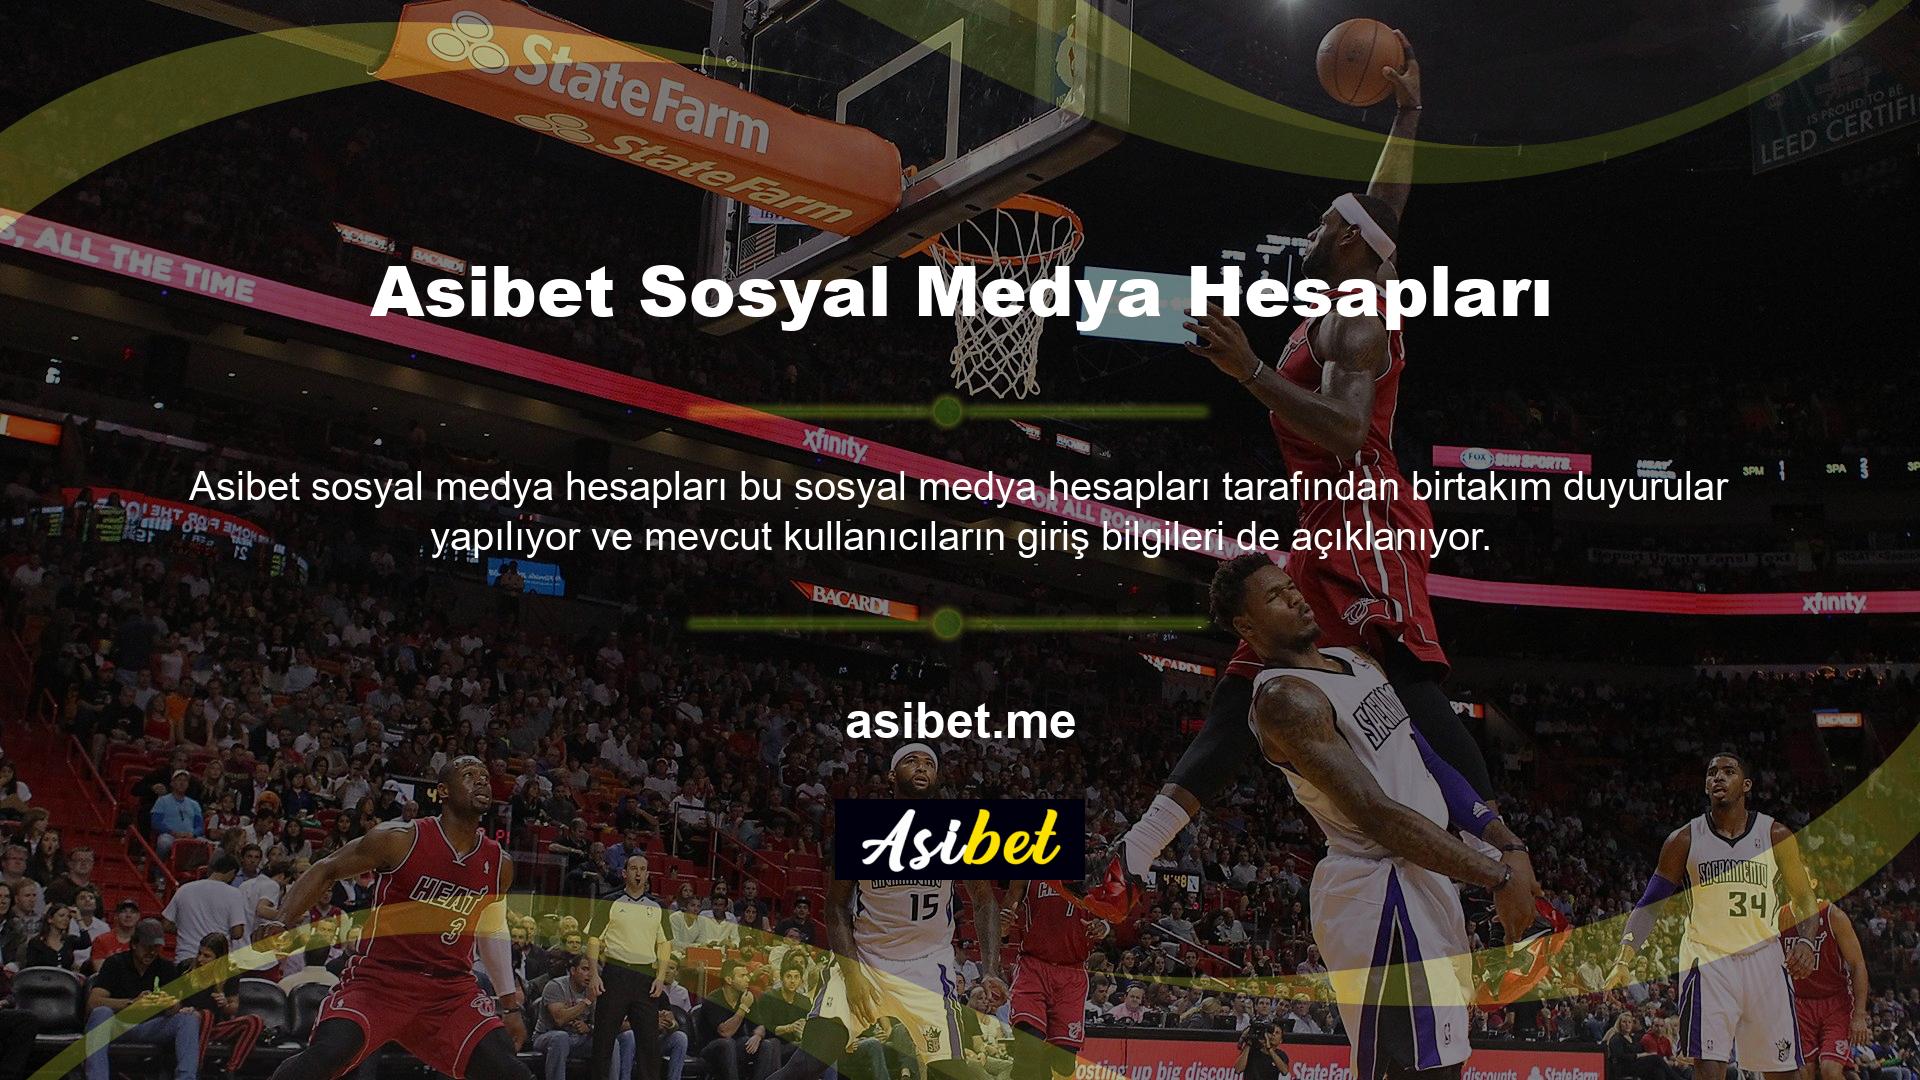 Asibet Twitter isimli sosyal ağdaki resmi Twitter hesabını takip ederek sık sık güncellenen giriş linkine ulaşabilirsiniz